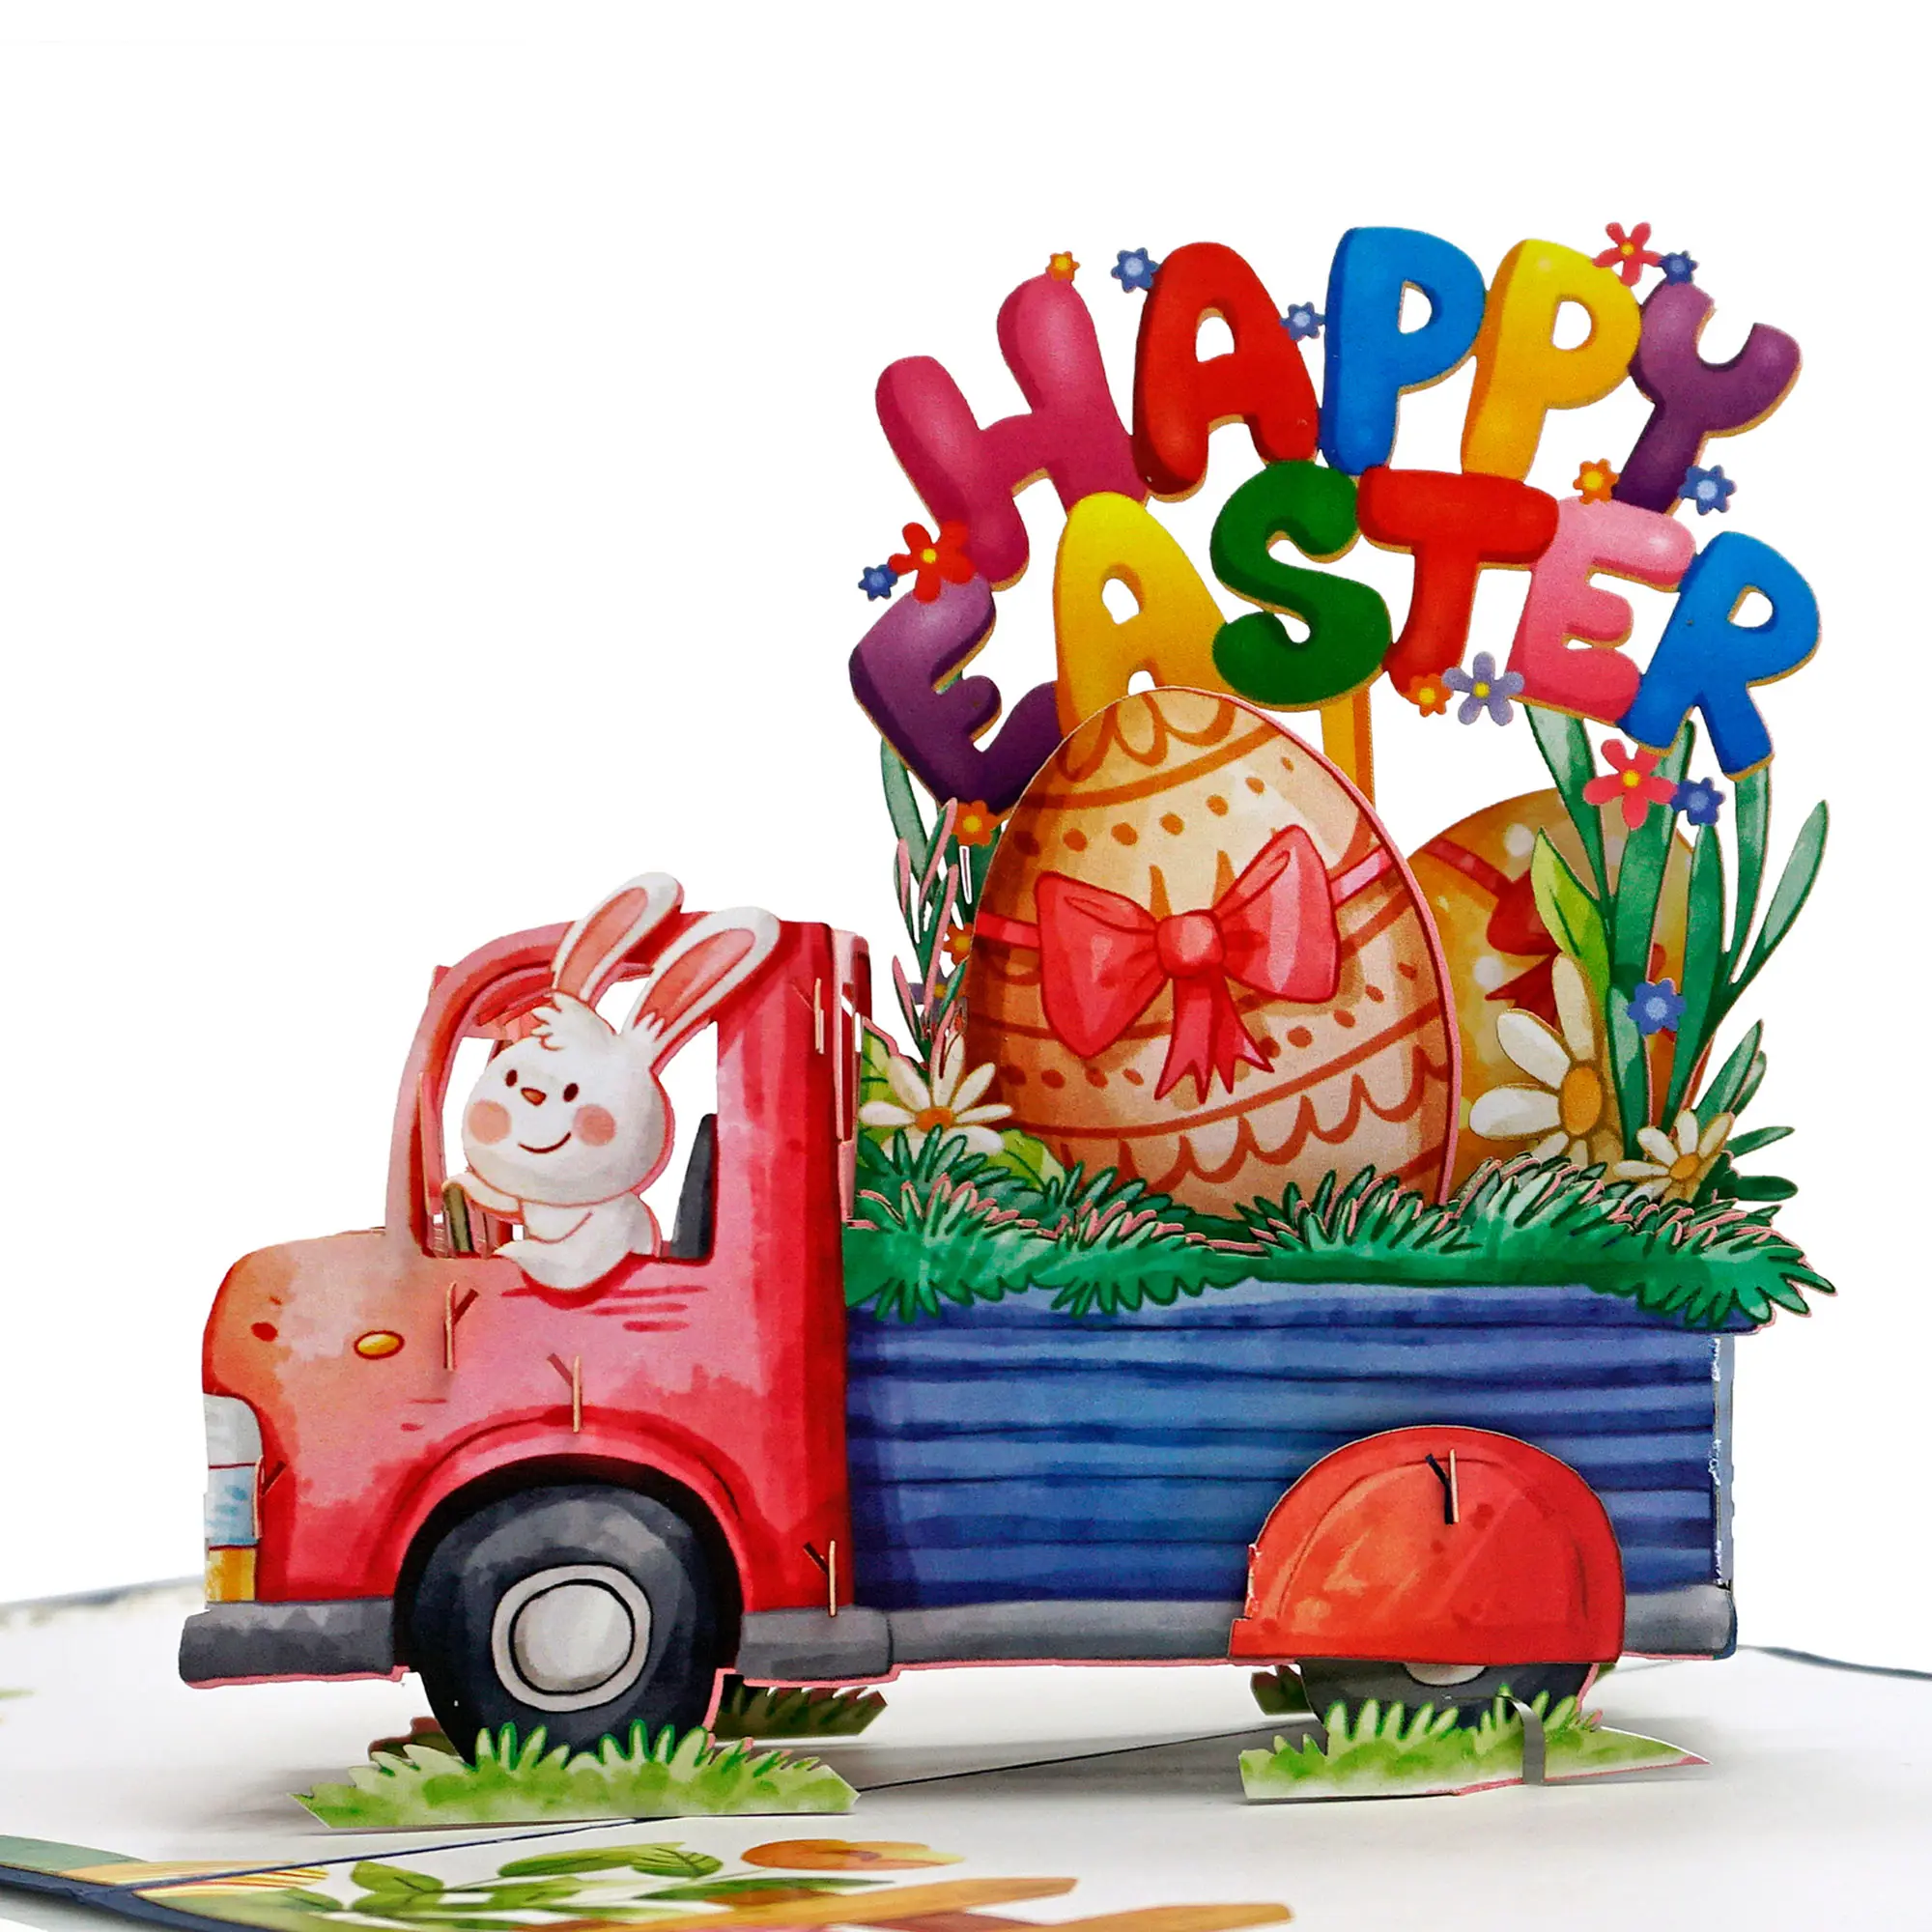 การออกแบบใหม่3D ป๊อปอัพการ์ดอวยพรอีสเตอร์เปล่าห่อหุ้มสุขสันต์วันอีสเตอร์กับรถบรรทุกแบกไข่และกระต่ายอีสเตอร์